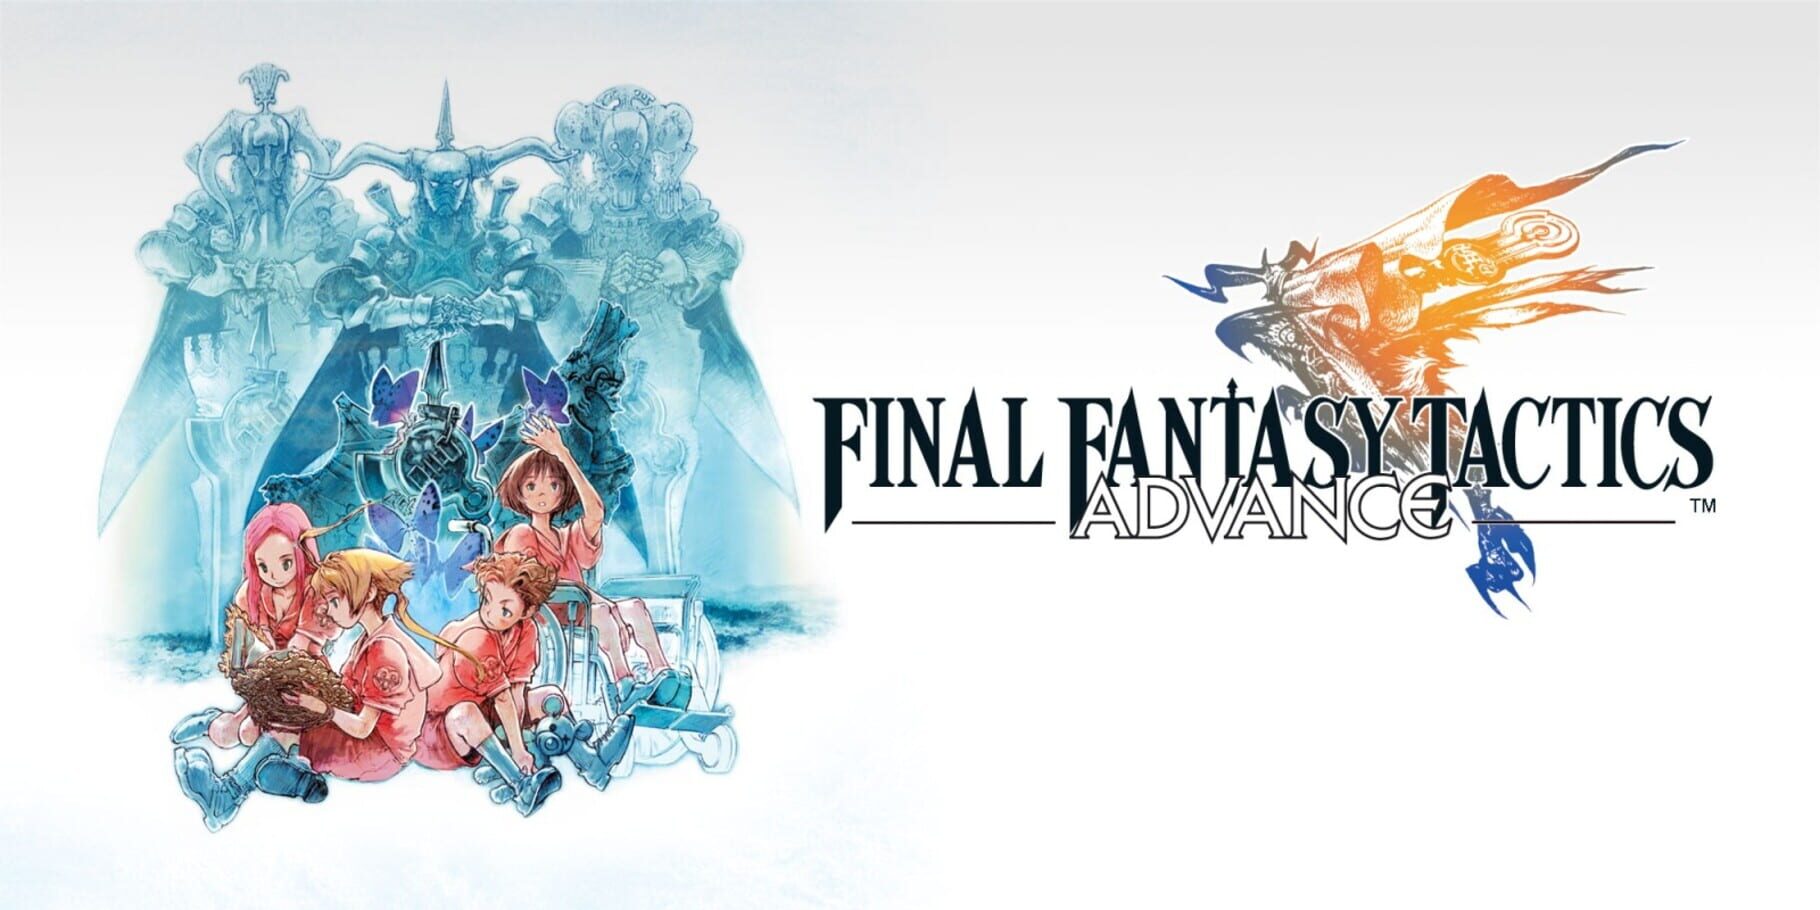 Final Fantasy Tactics Advance Image